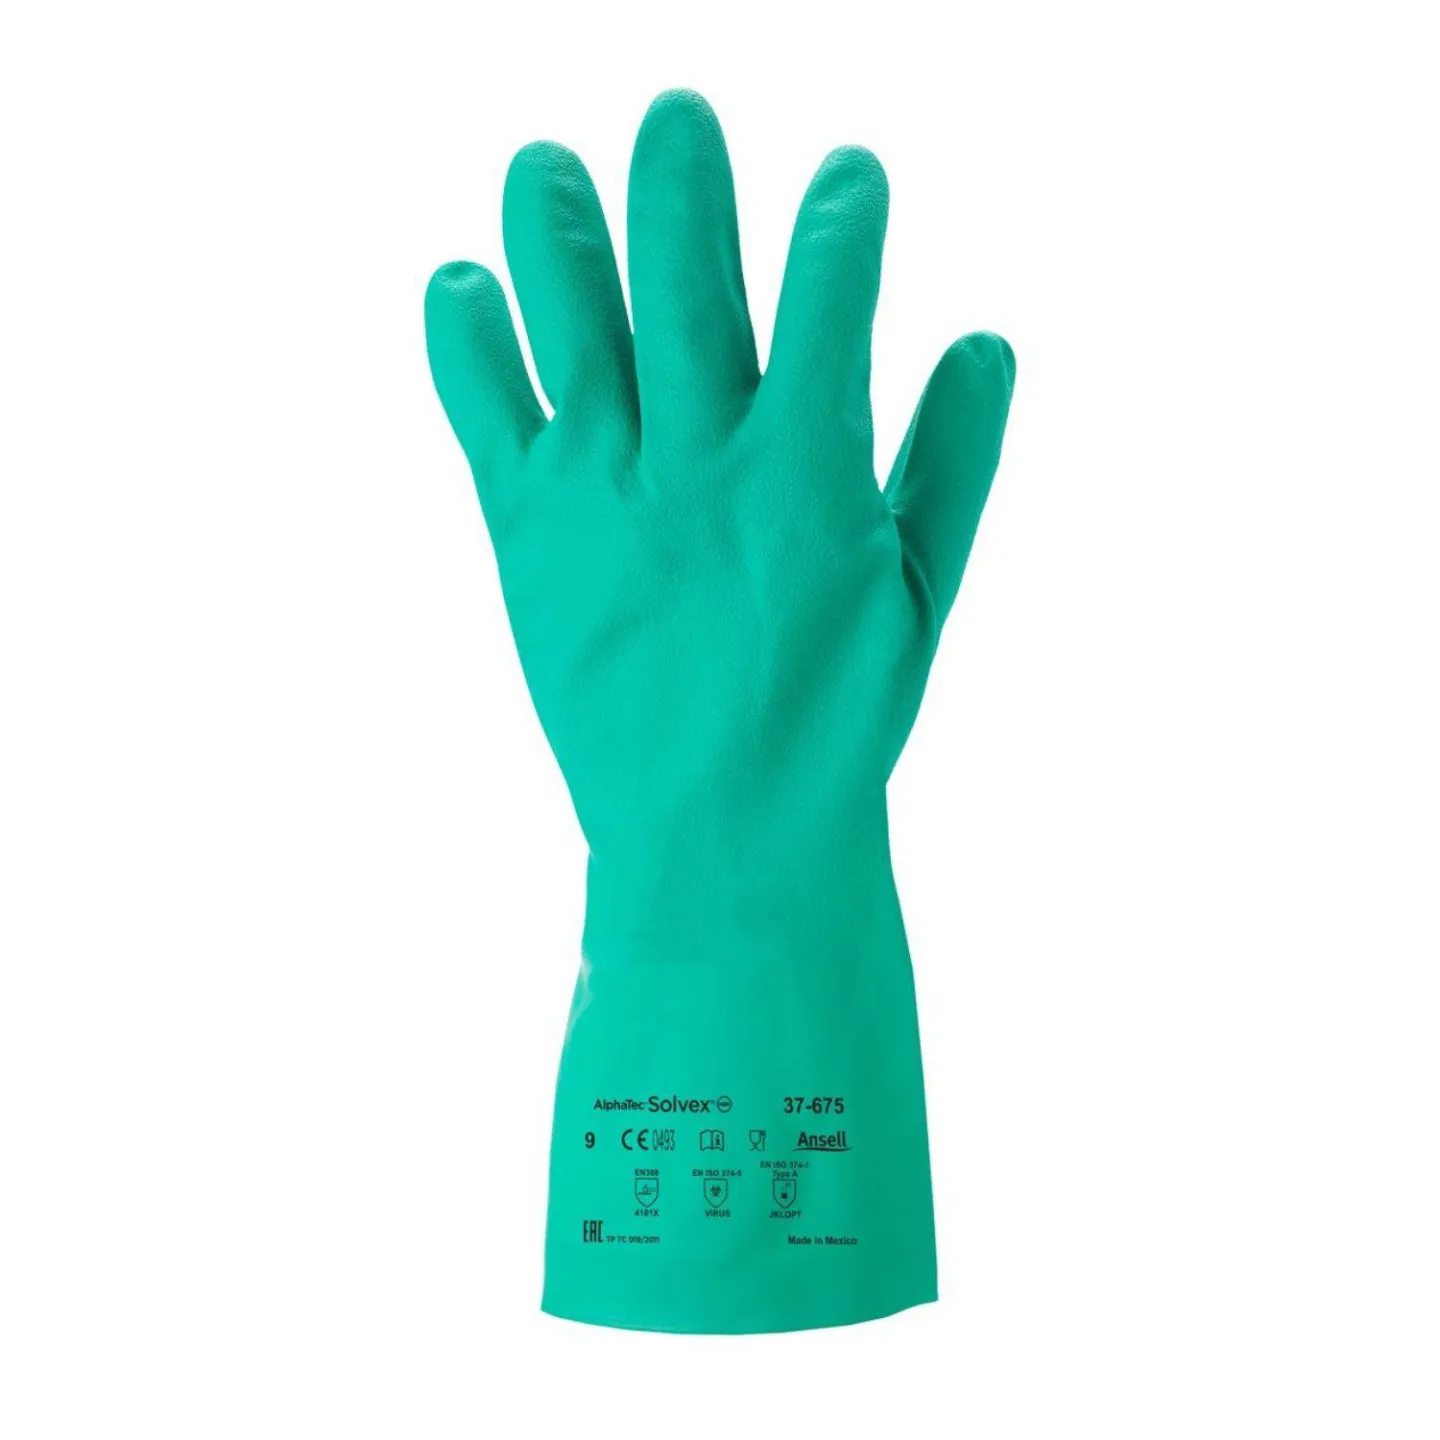 Herbruikbare nitril handschoen.